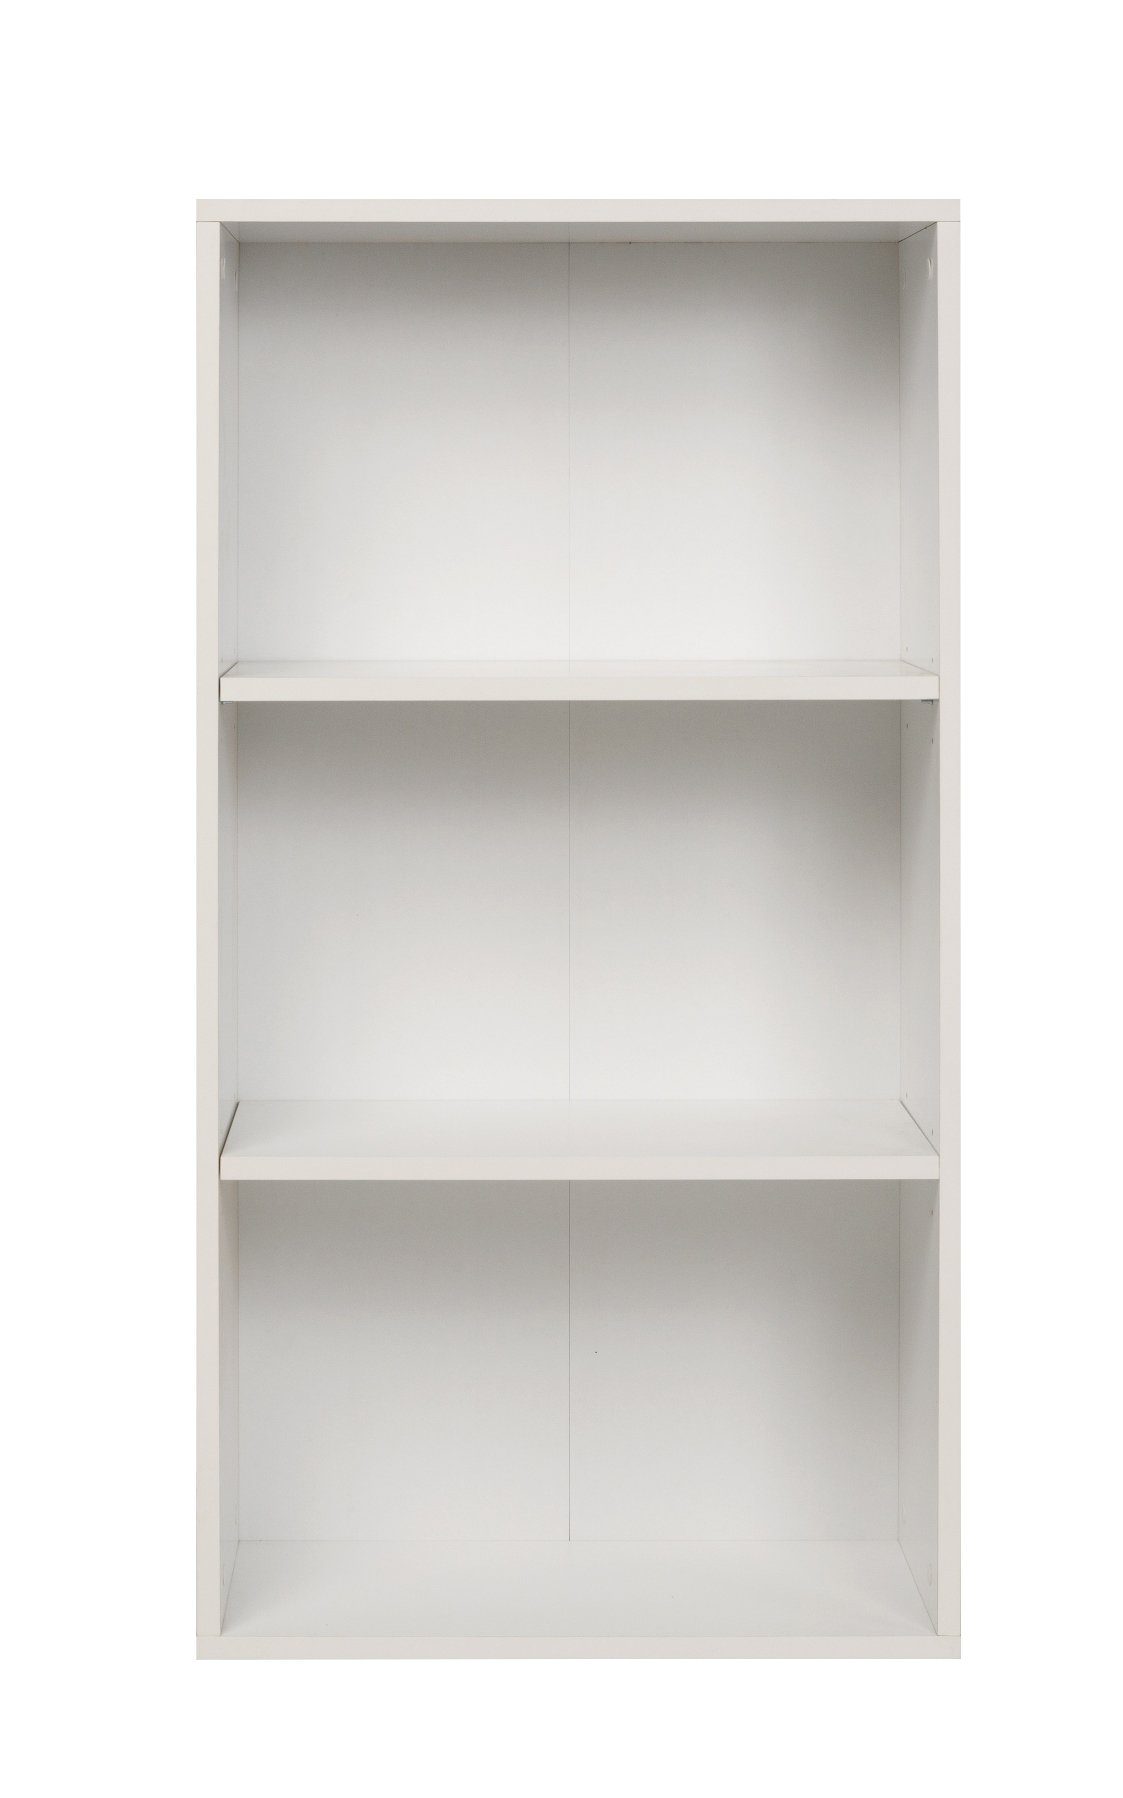 Furni24 Breites Bücherregal Fächern, cm 60x31x115 weiß, mit Bücherregal 3